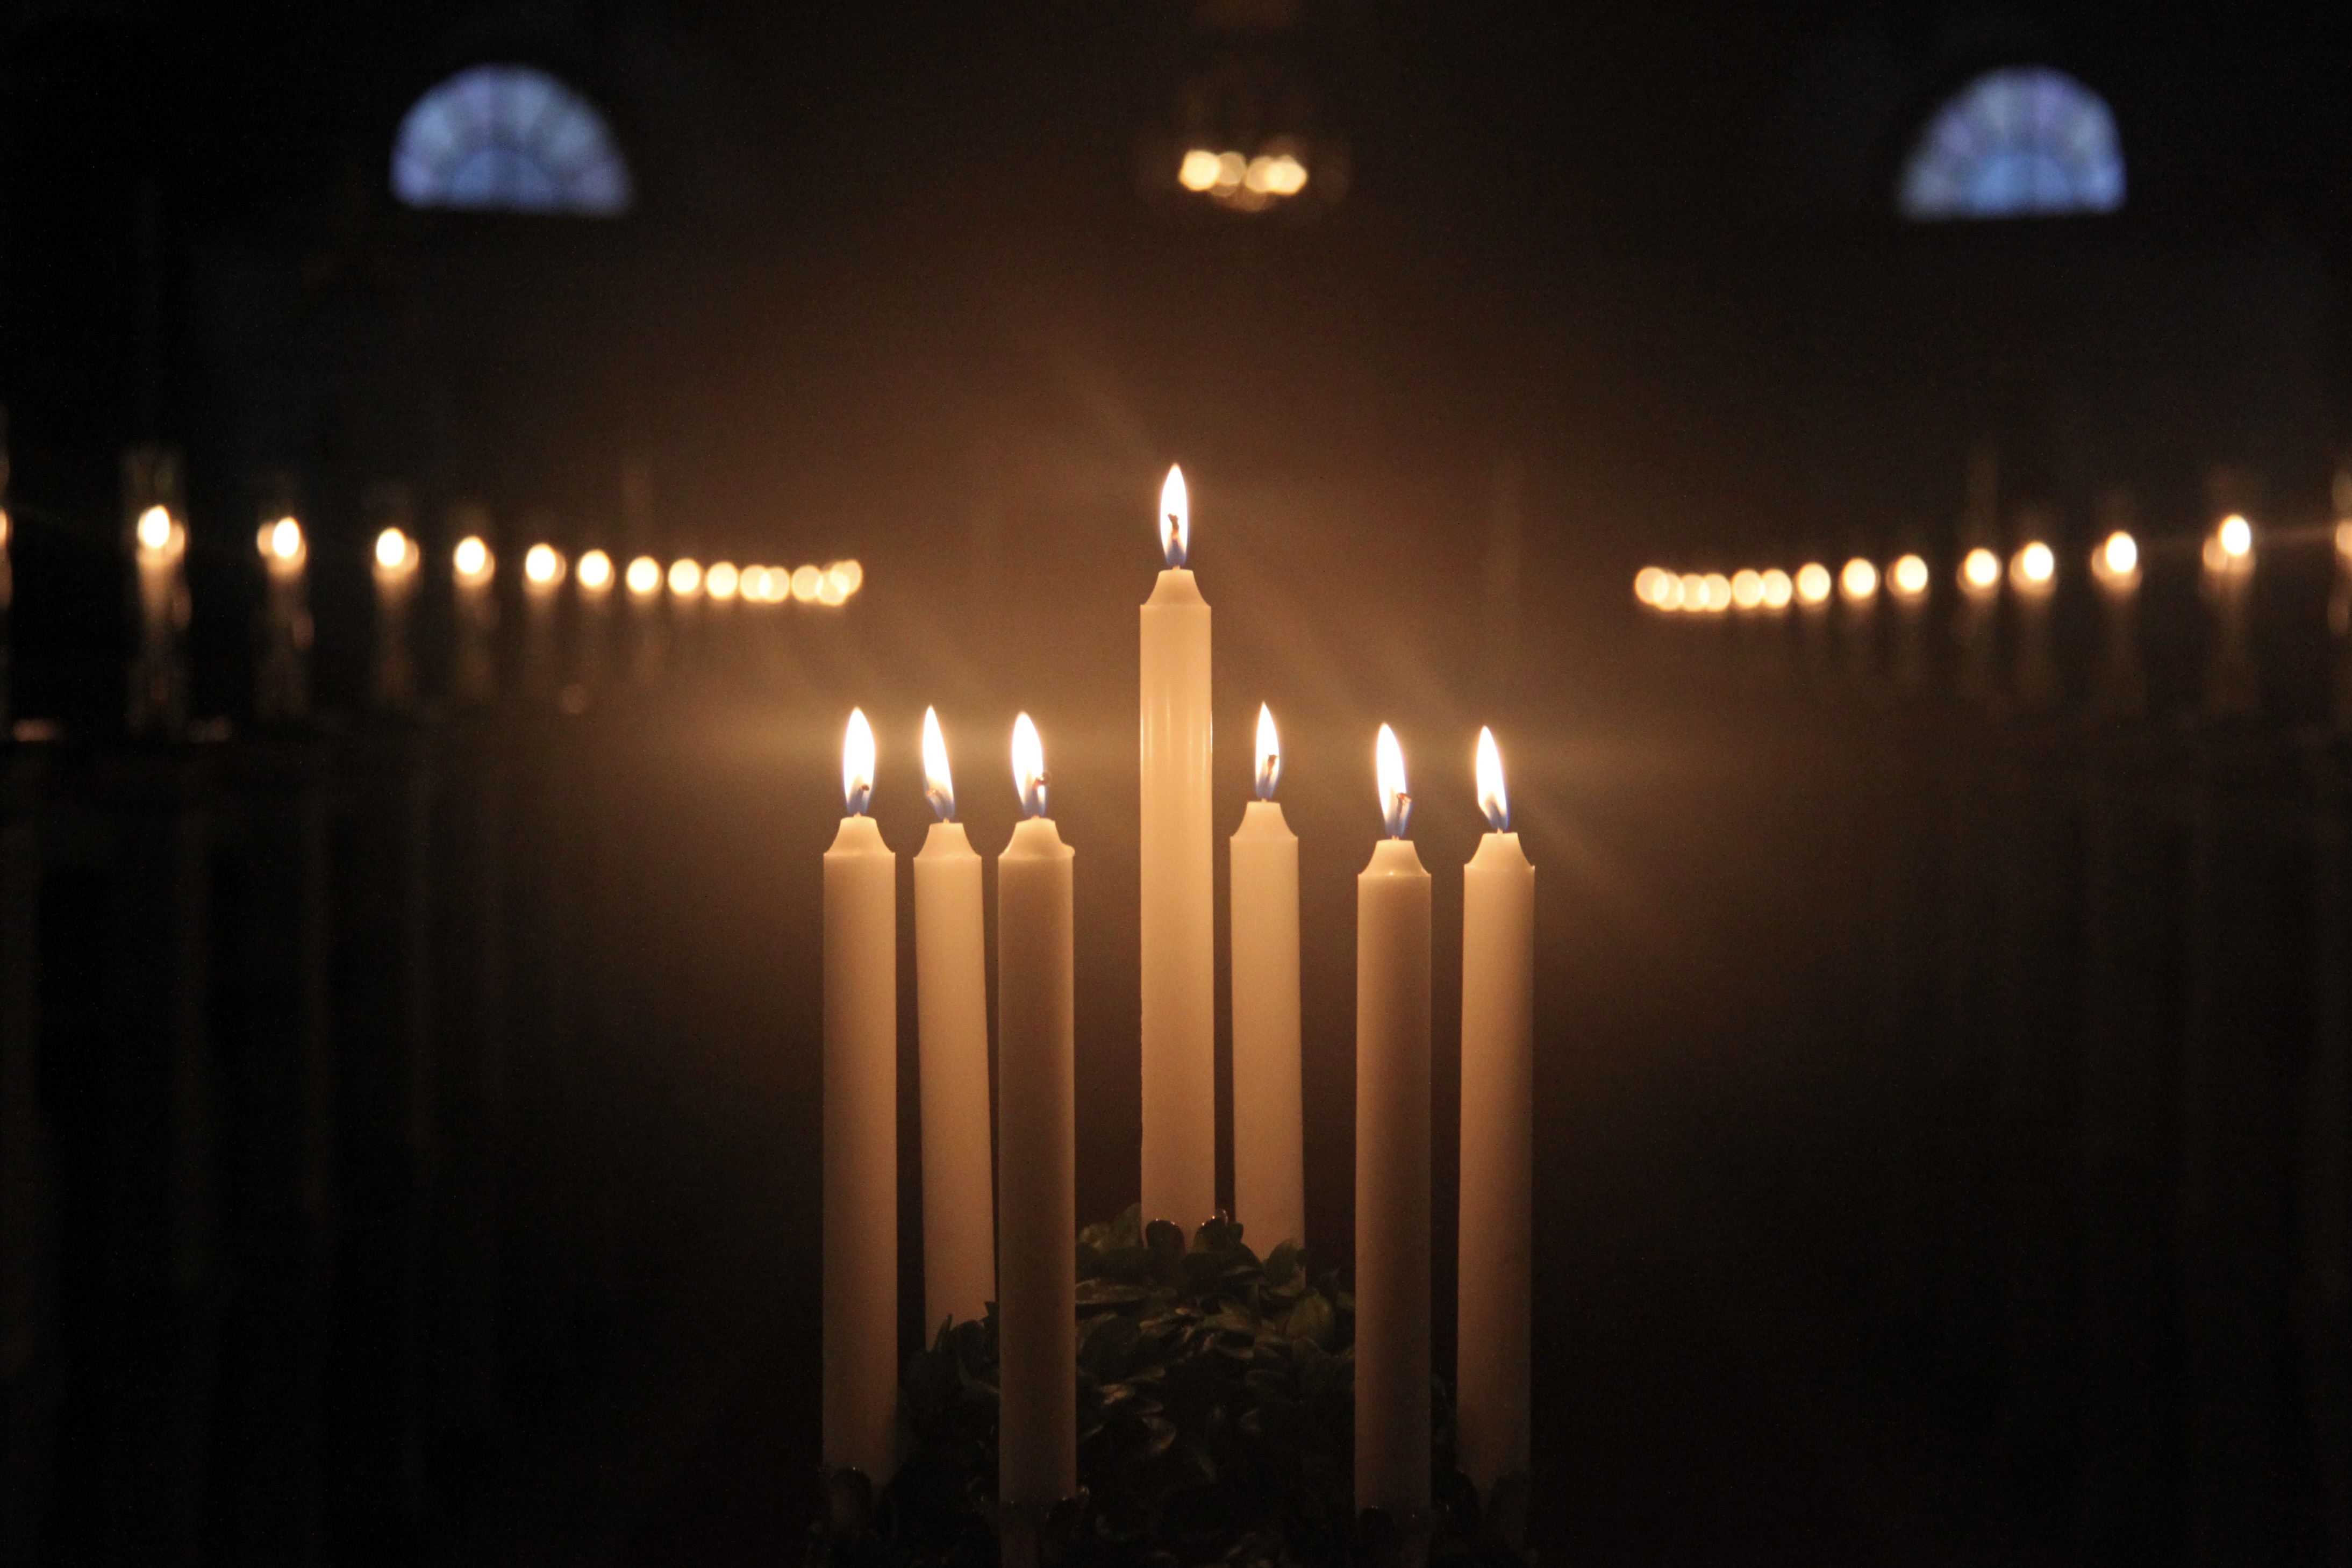 En luciakrona med brinnande ljus i en mörk kyrka.